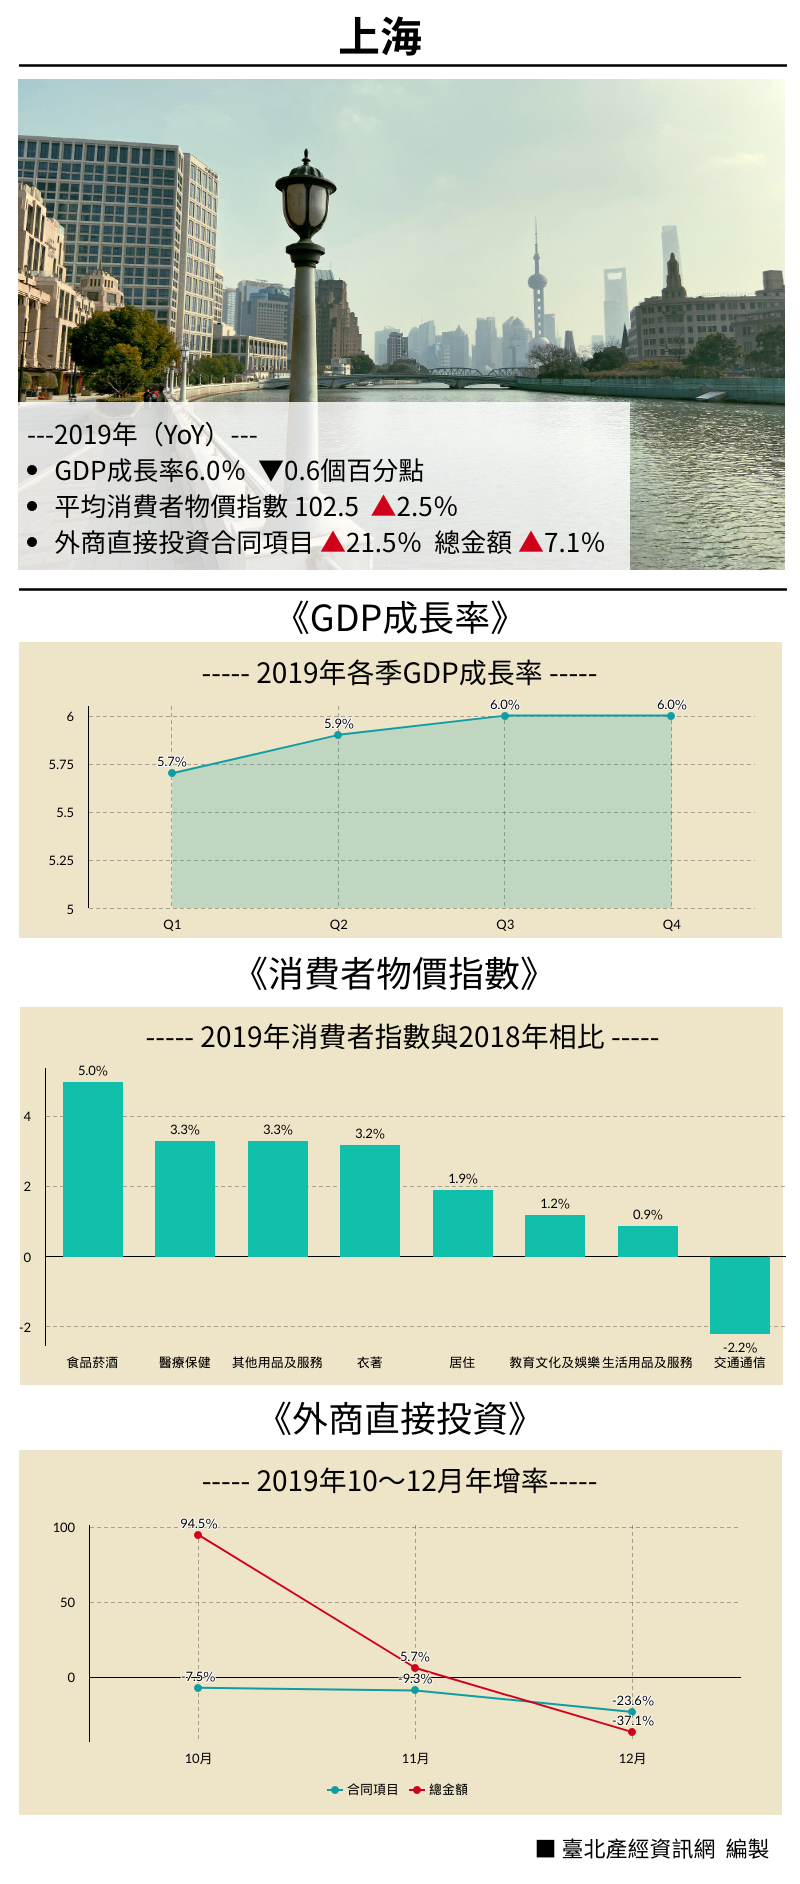 2019年重點經濟數據—上海